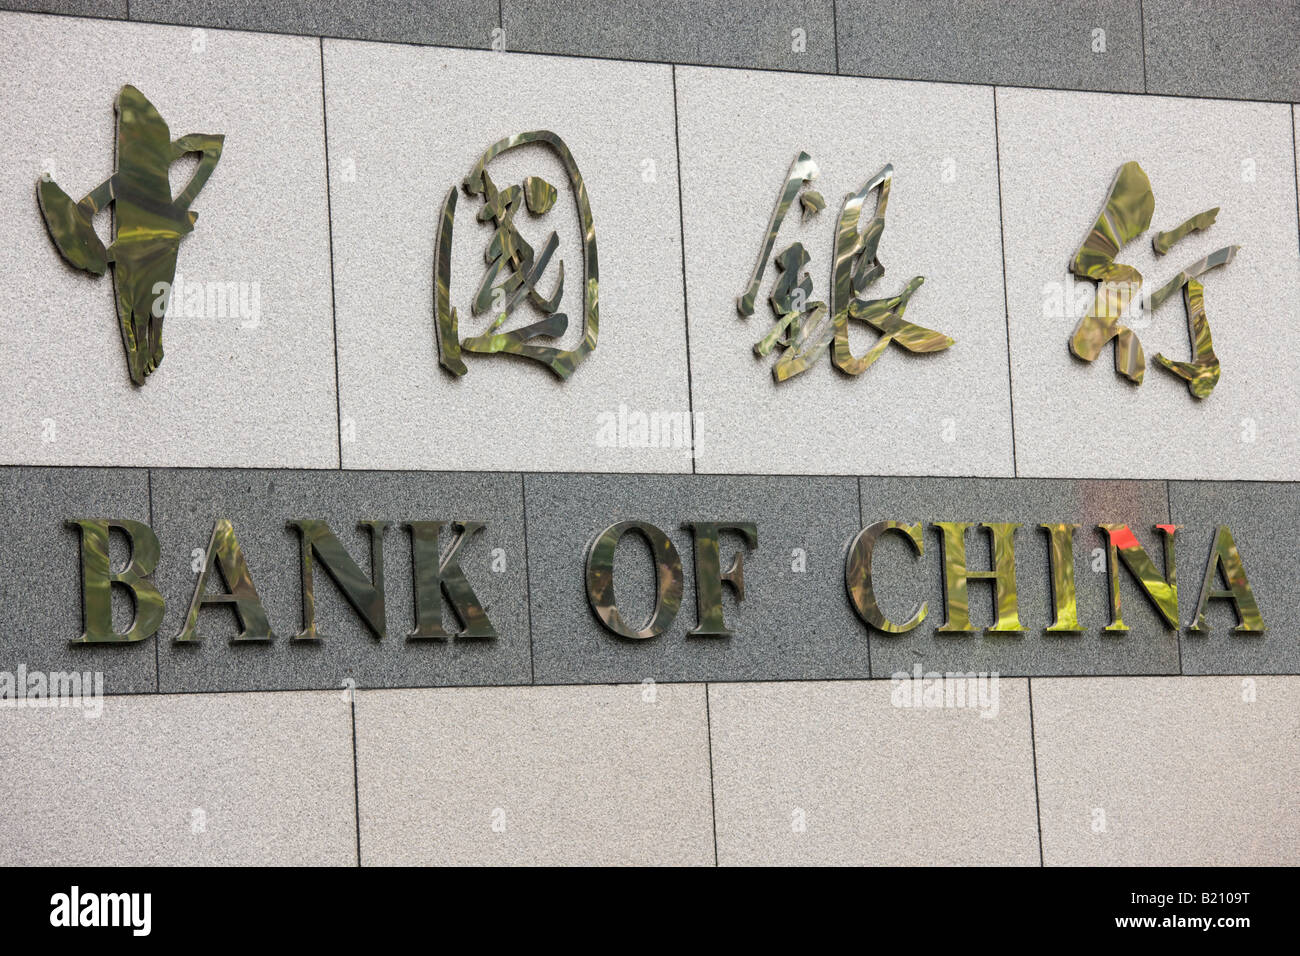 Bank of China office in financial district Hong Kong China Stock Photo